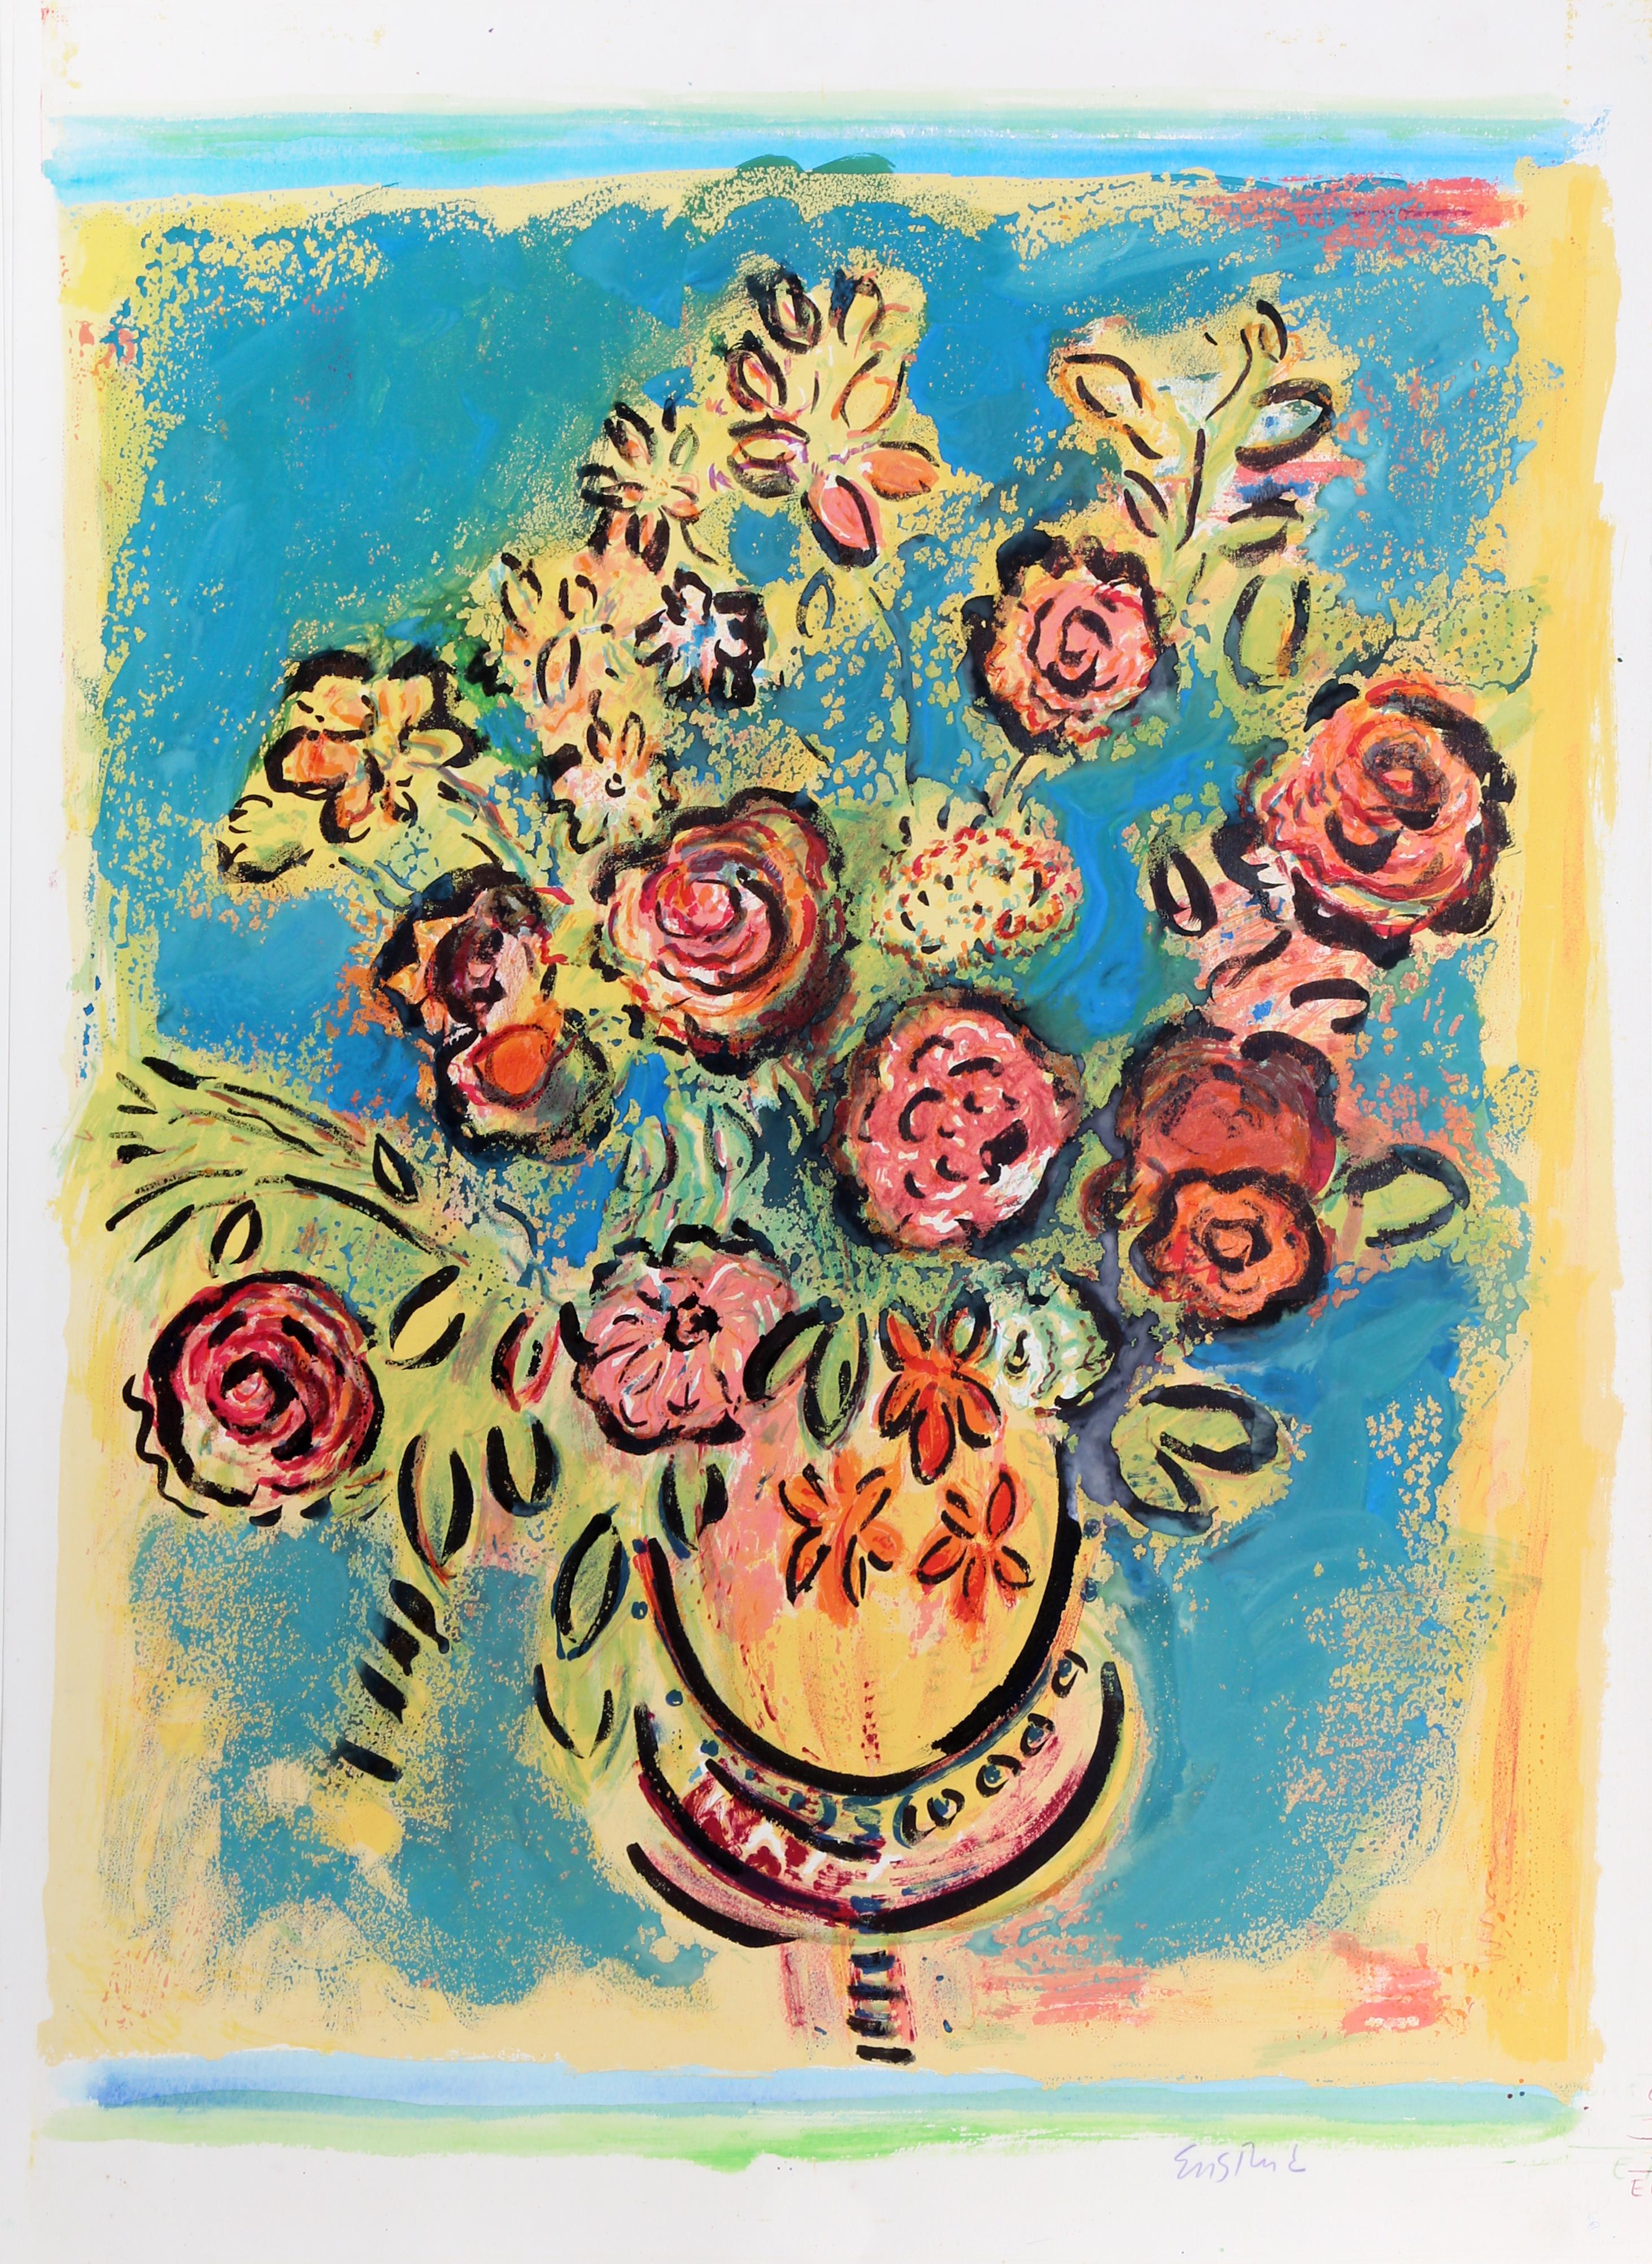 Einzigartige handgemalte Lithografie eines bunten Blumenstraußes von Wayne Ensrud, Amerikaner (1934).
Stiller Sonntag (Blau)
Wayne Ensrud, Amerikaner (1934)
Datum: 1980
Handgemalte Lithographie, mit Bleistift signiert
Größe: 35 in. x 26 in. (88,9 cm